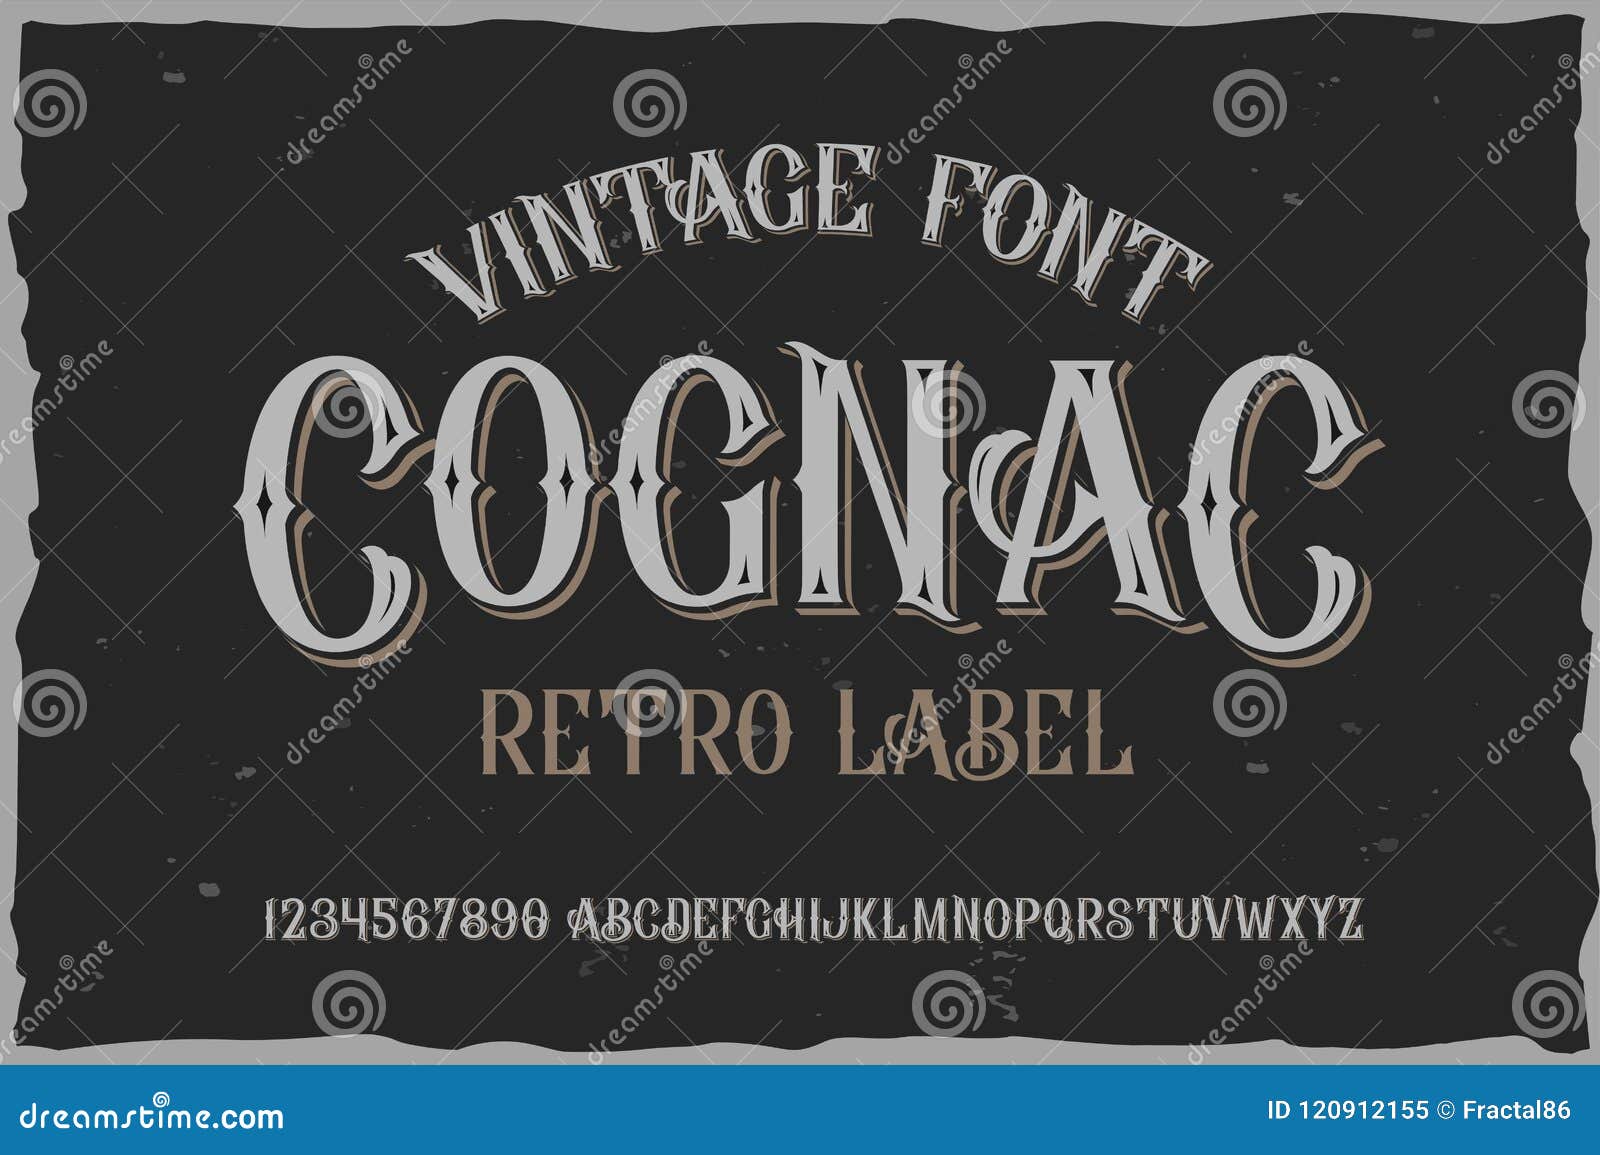  vintage label font. cognac style.